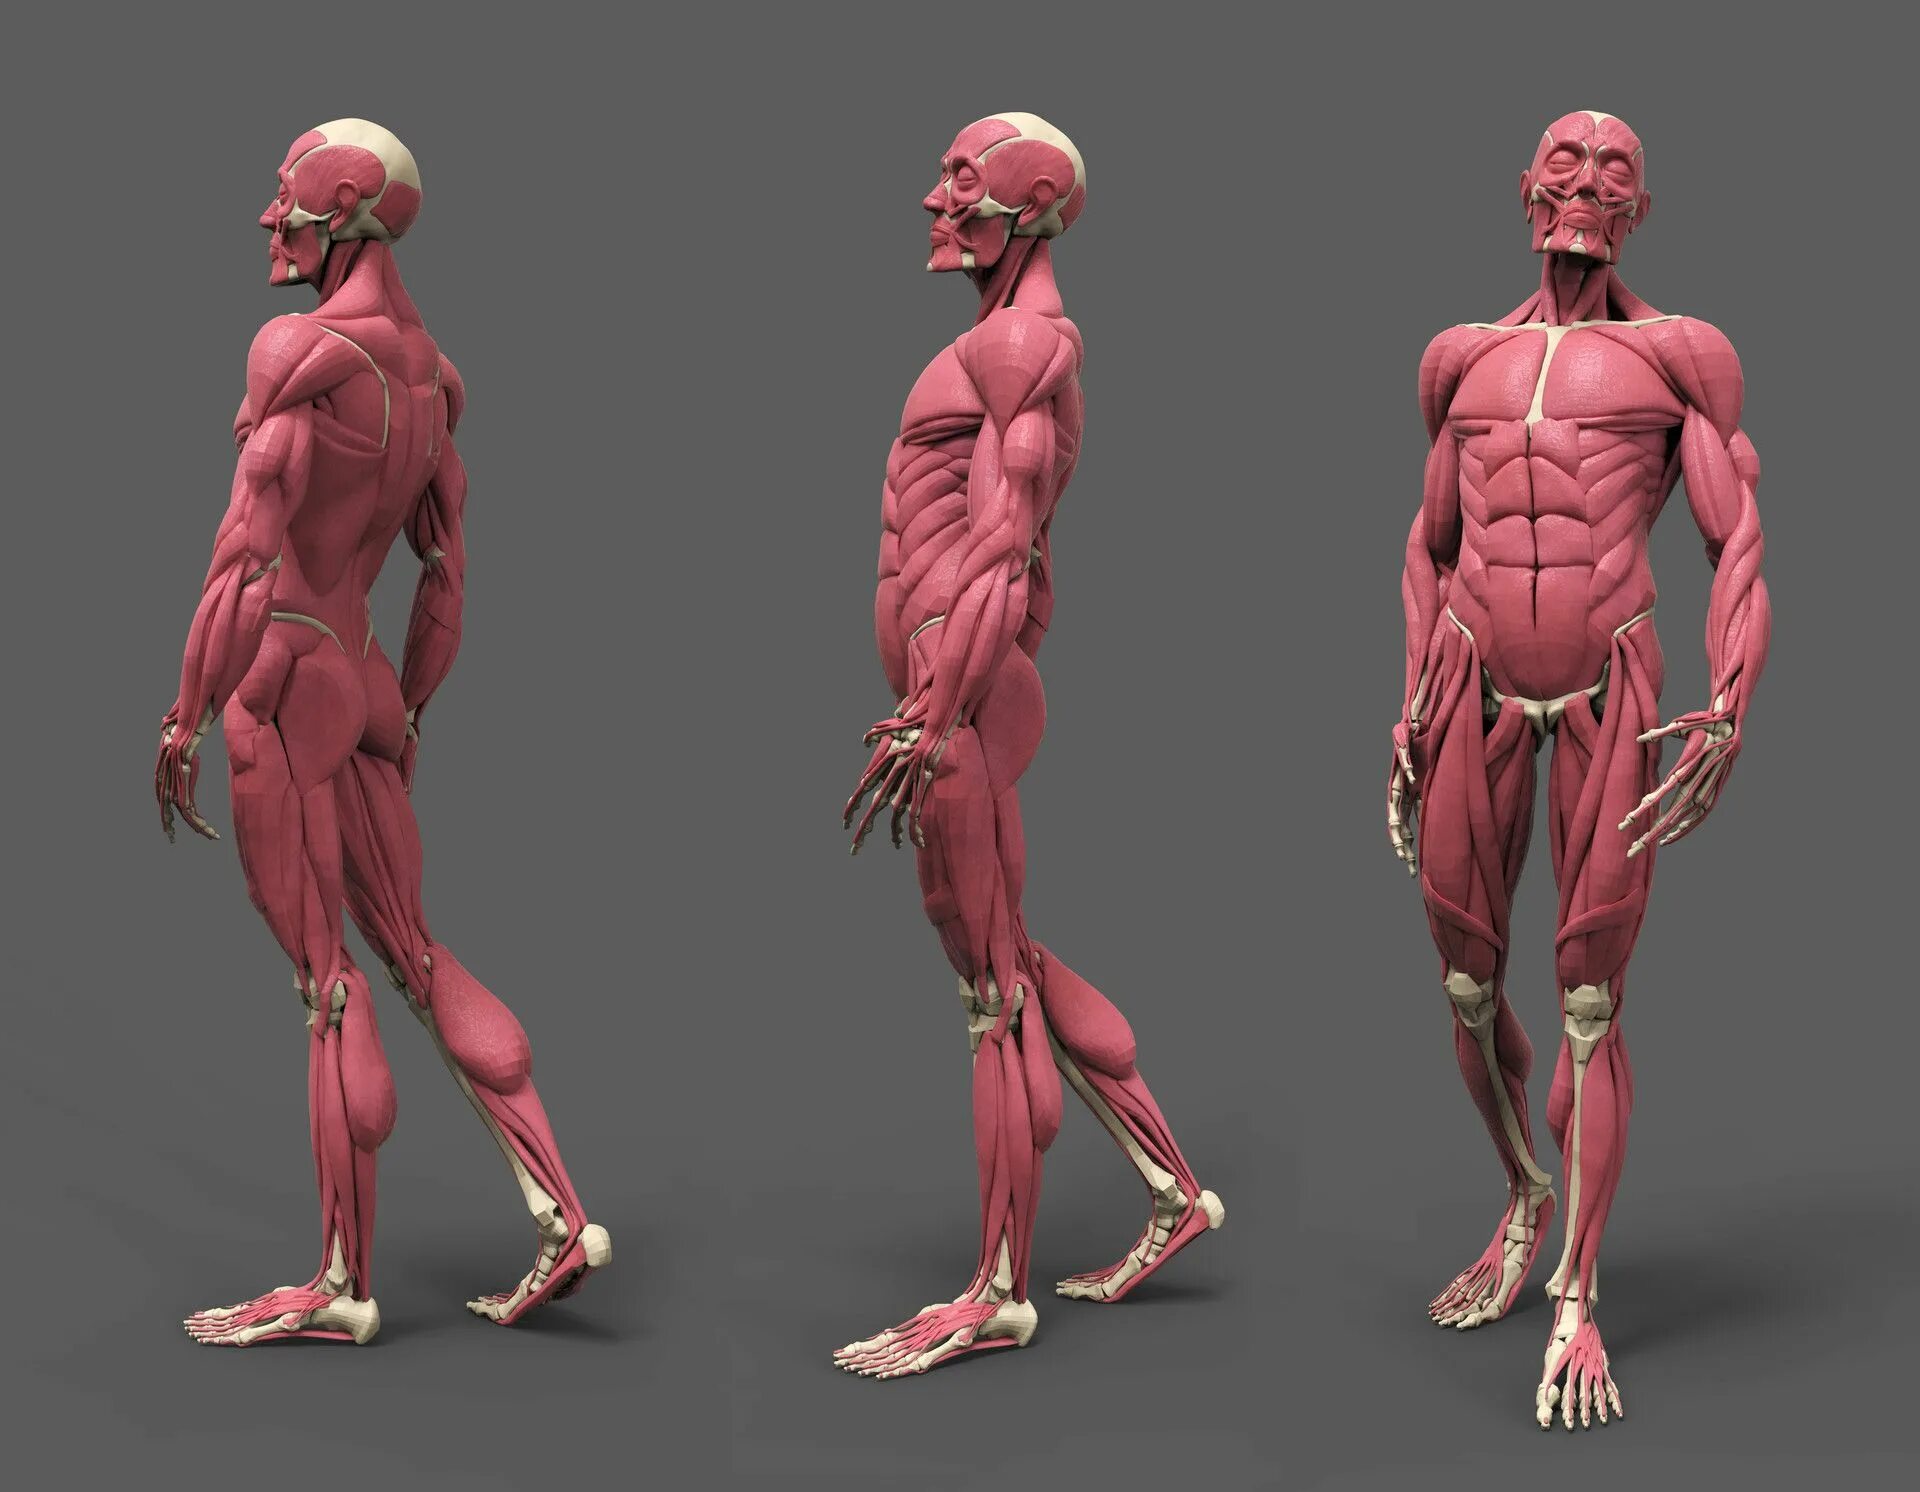 Анатомия твц. Скелет и мышцы референс. ХЬЮМАН анатомия фор артист. Мышечный скелет референс. Анатомия человека мышцы для художников.